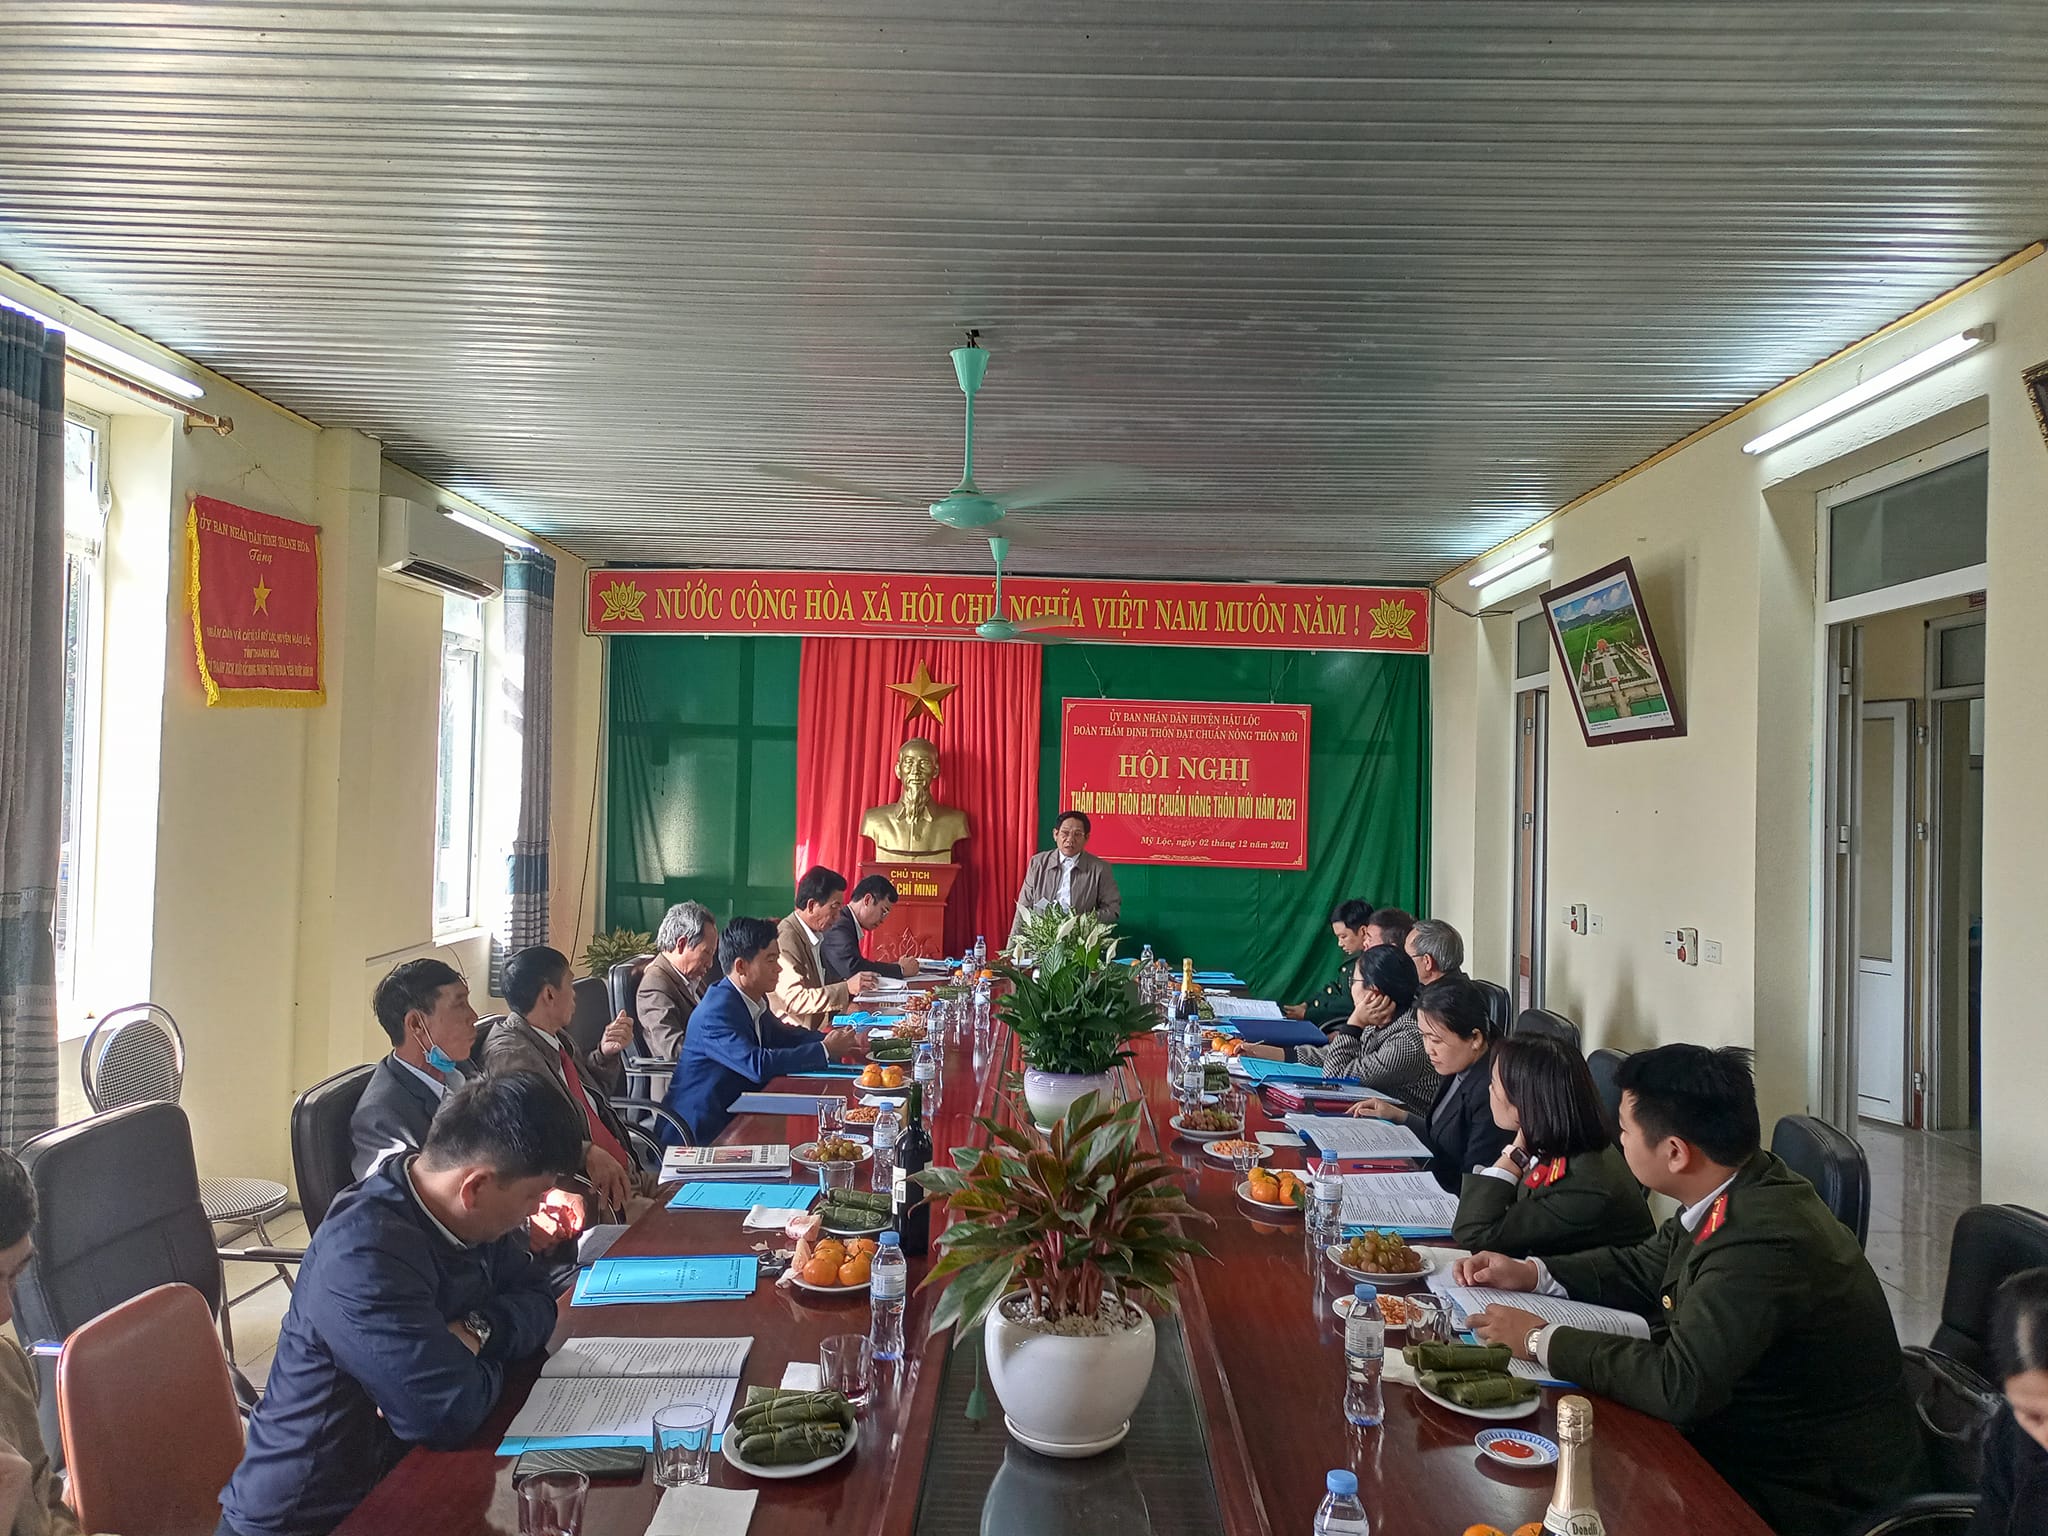 Thẩm định thôn NTM cho hai thôn Hà Liên và Minh Quy của xã Mỹ Lộc - huyện Hậu Lộc